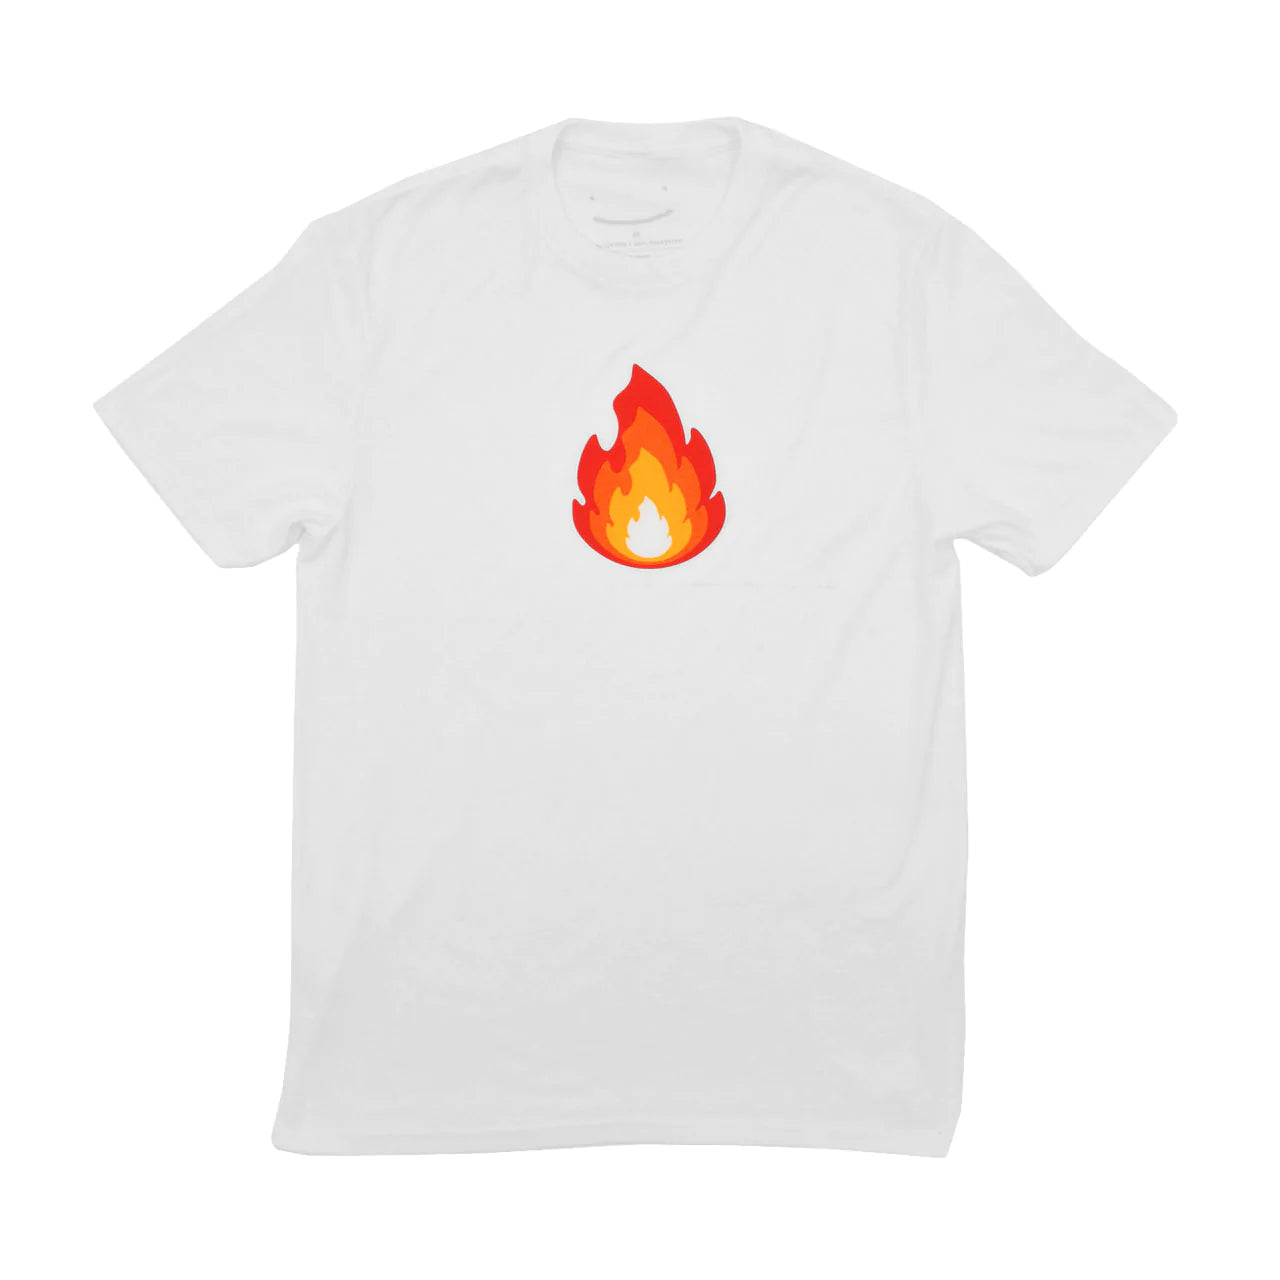 Sapnap Layered Fire T-Shirt